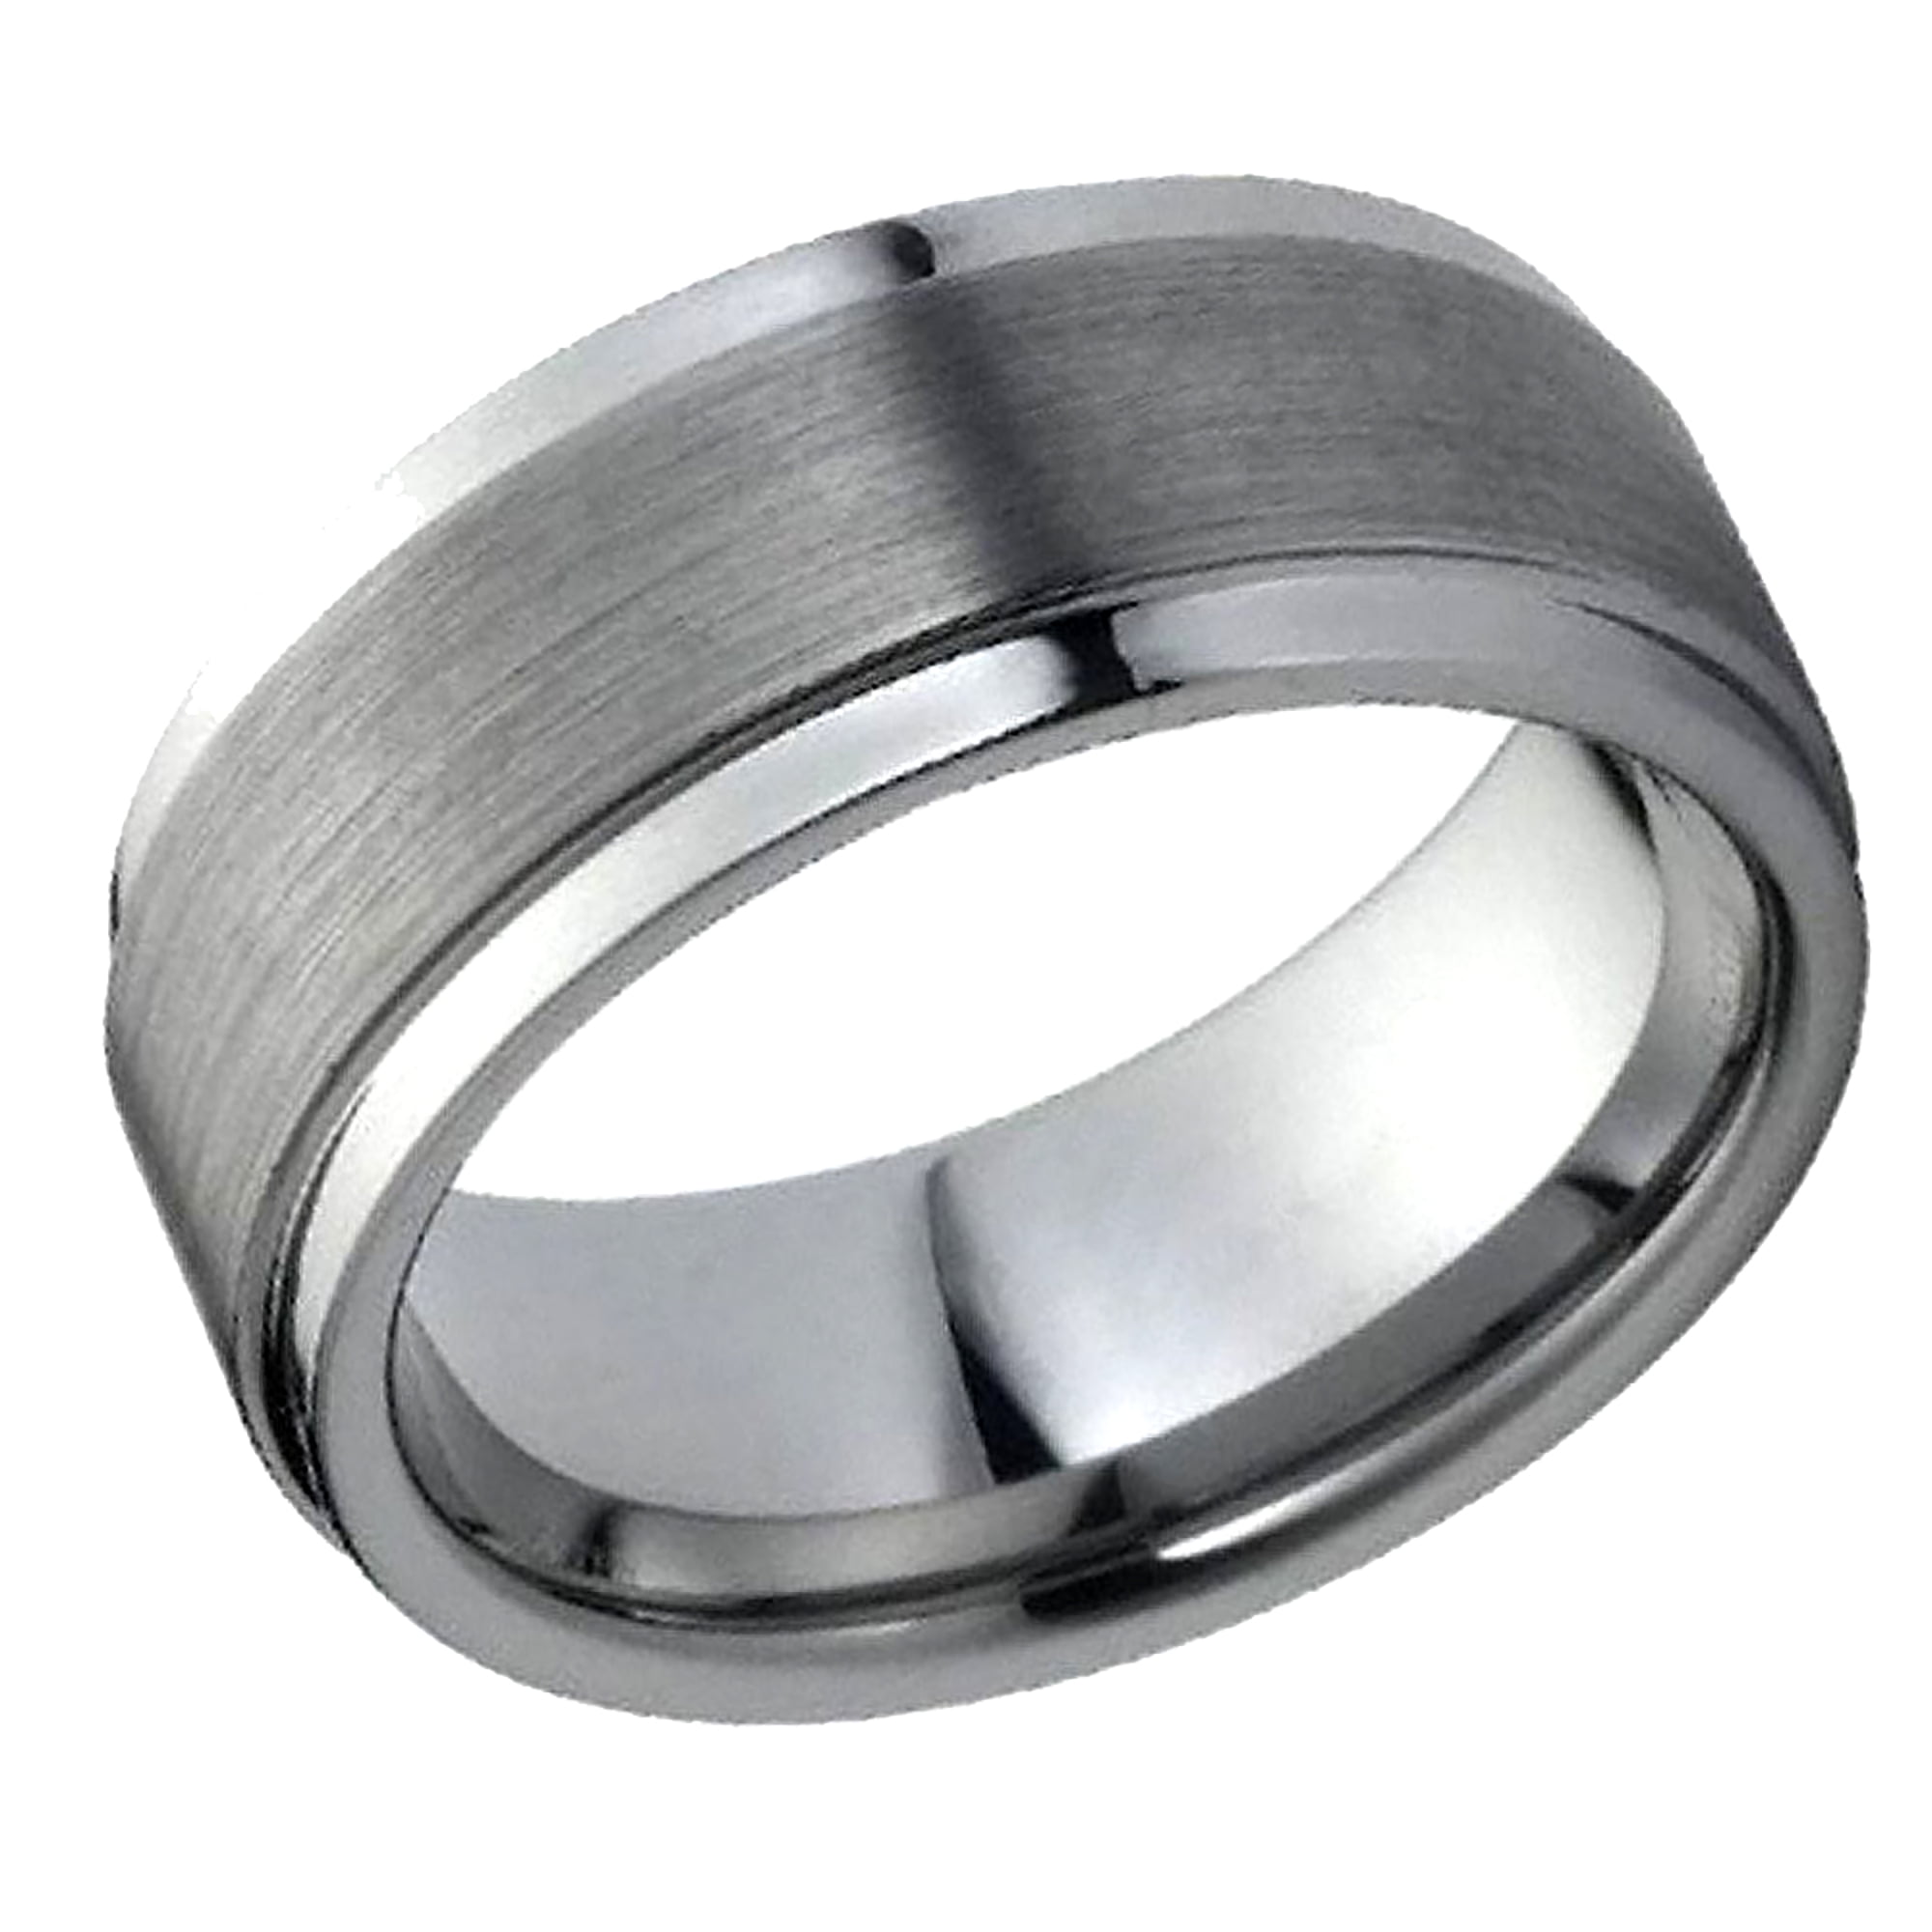 Details about   Free Engraving GunMetal Tungsten Carbide Brushed Step Edge Wedding Band Ring 